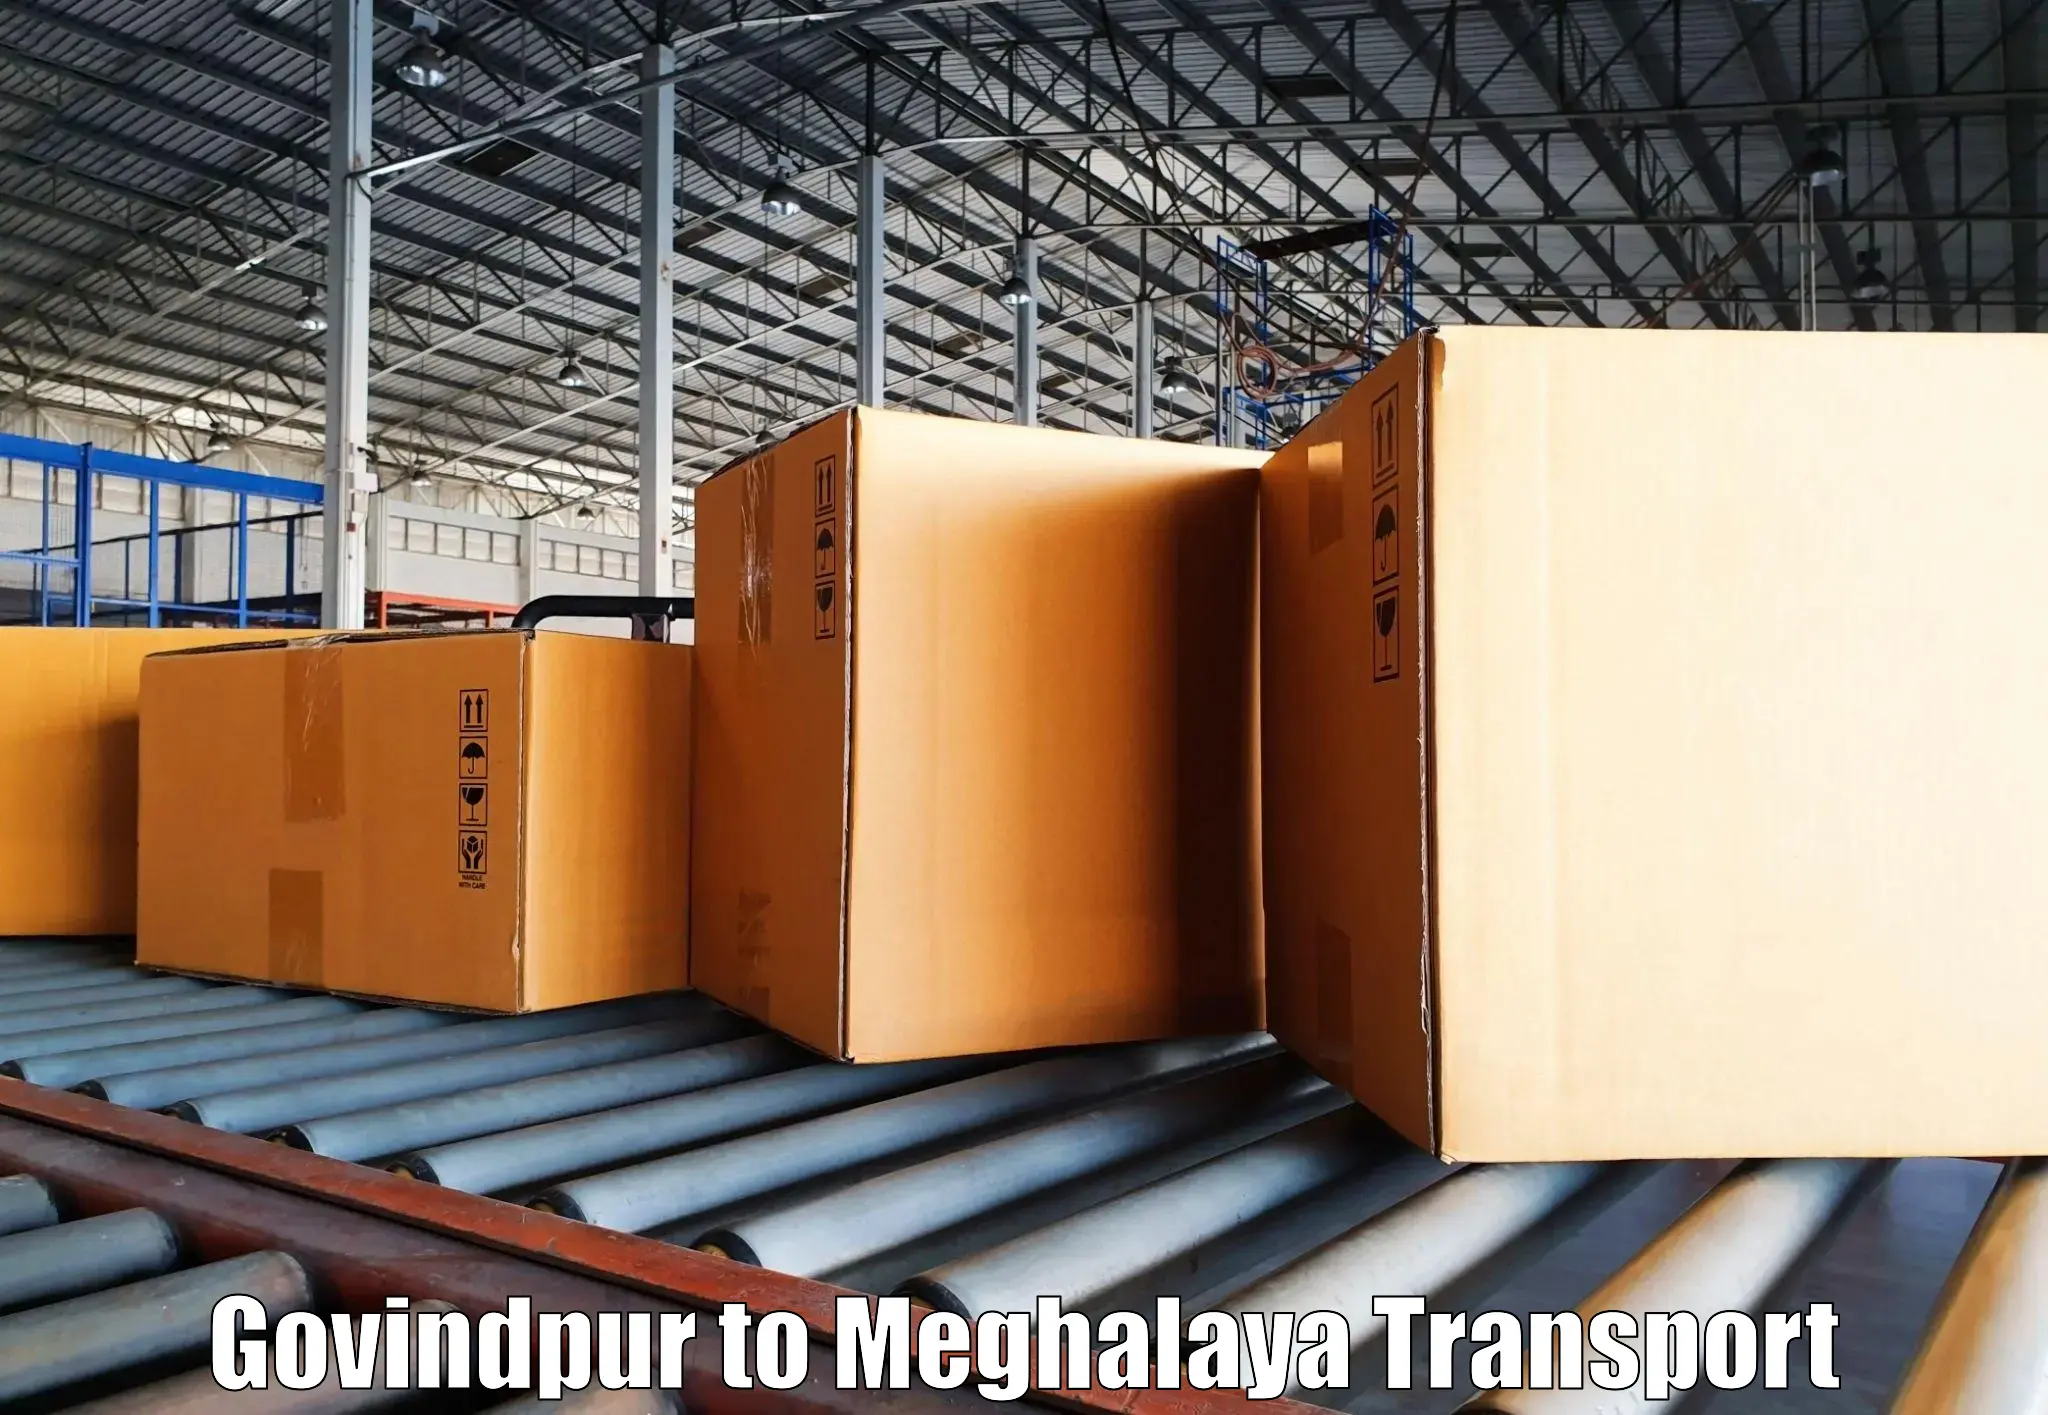 Road transport online services Govindpur to Cherrapunji